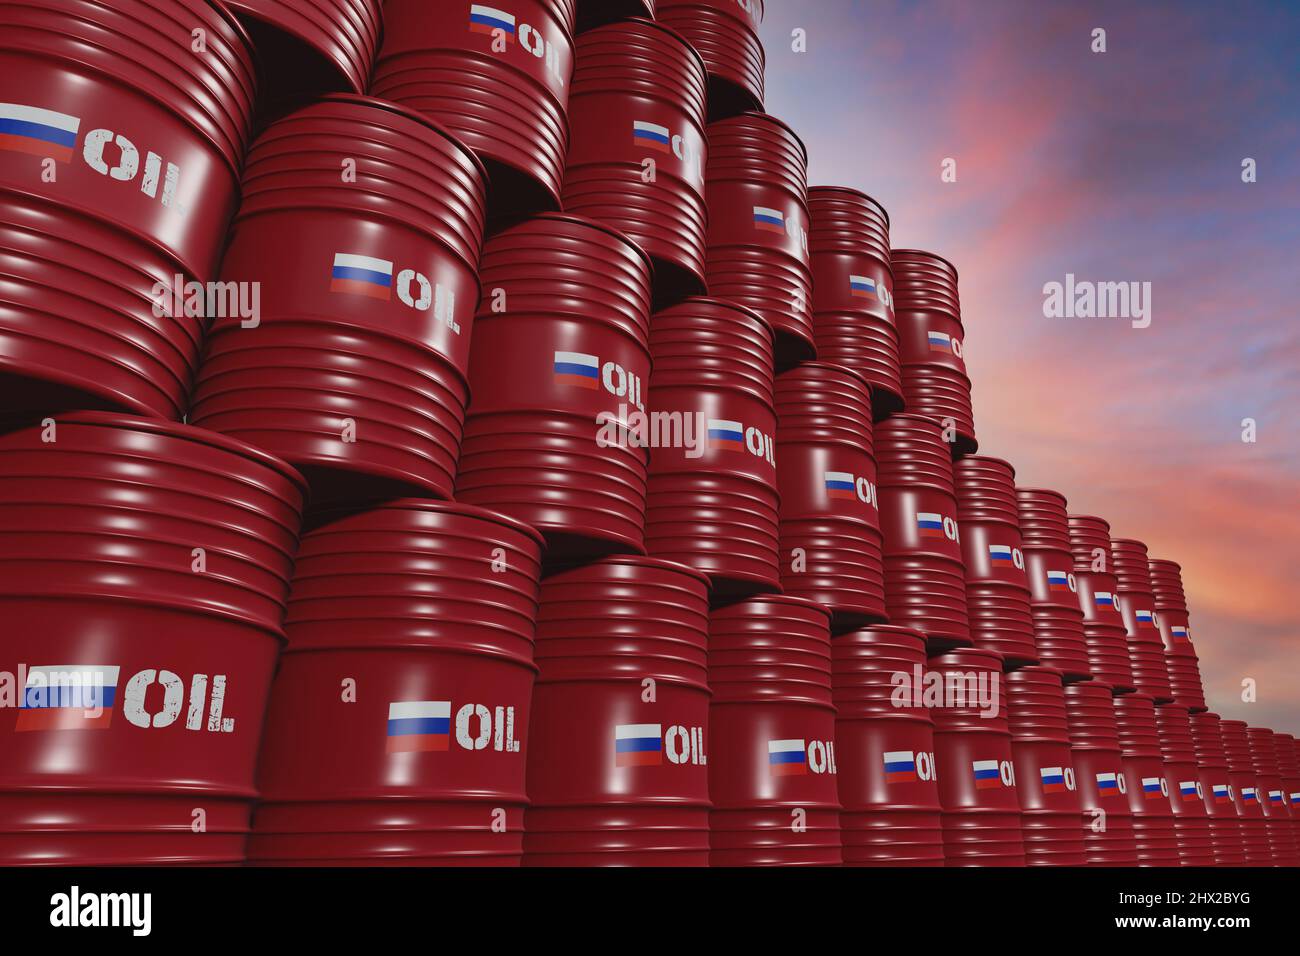 Barils de pétrole en métal rouge avec le drapeau russe et le pétrole écrit dessus Banque D'Images